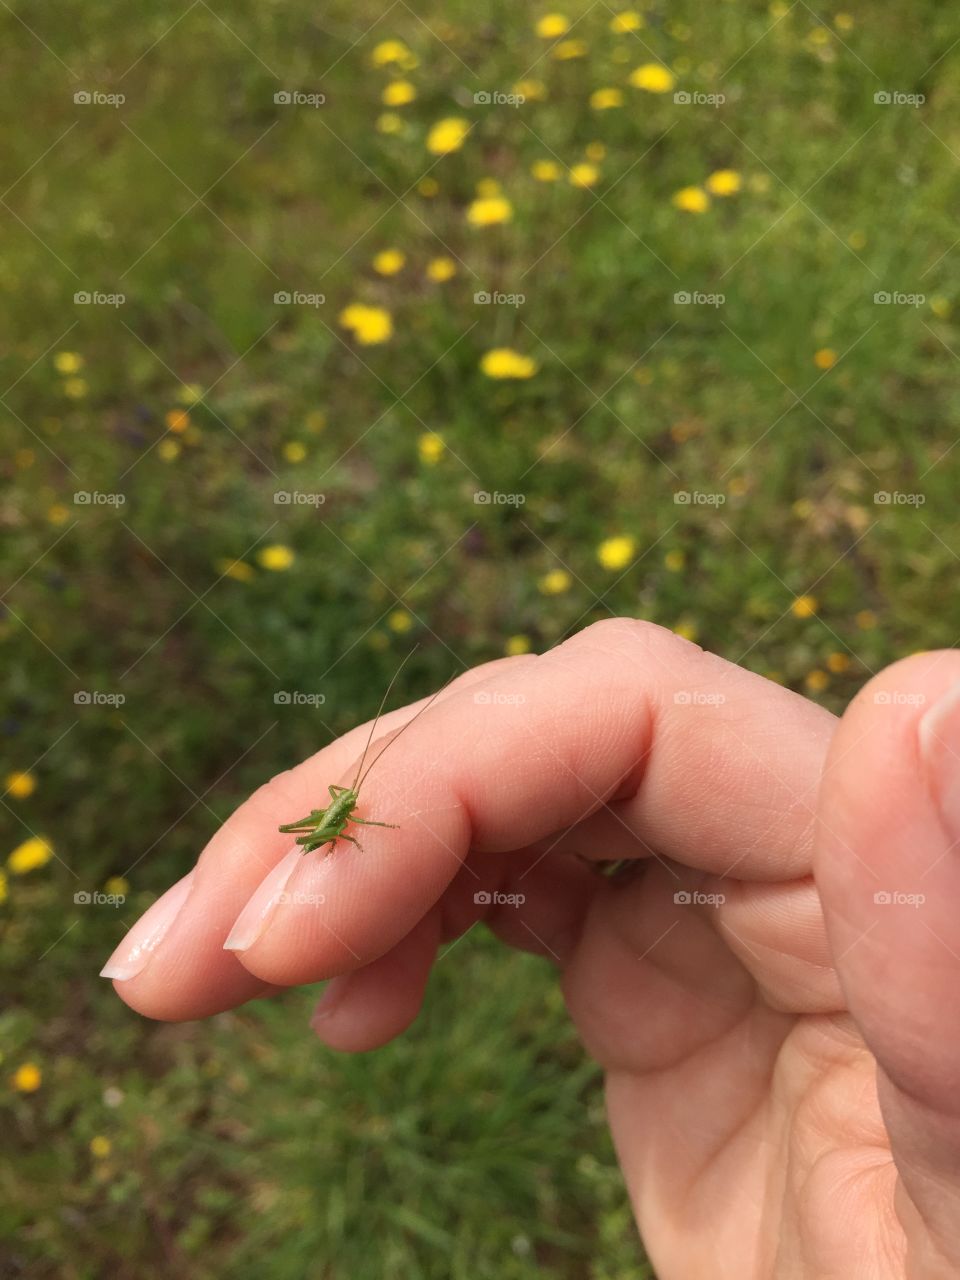 Grasshopper. Strolling in the field with little friends 